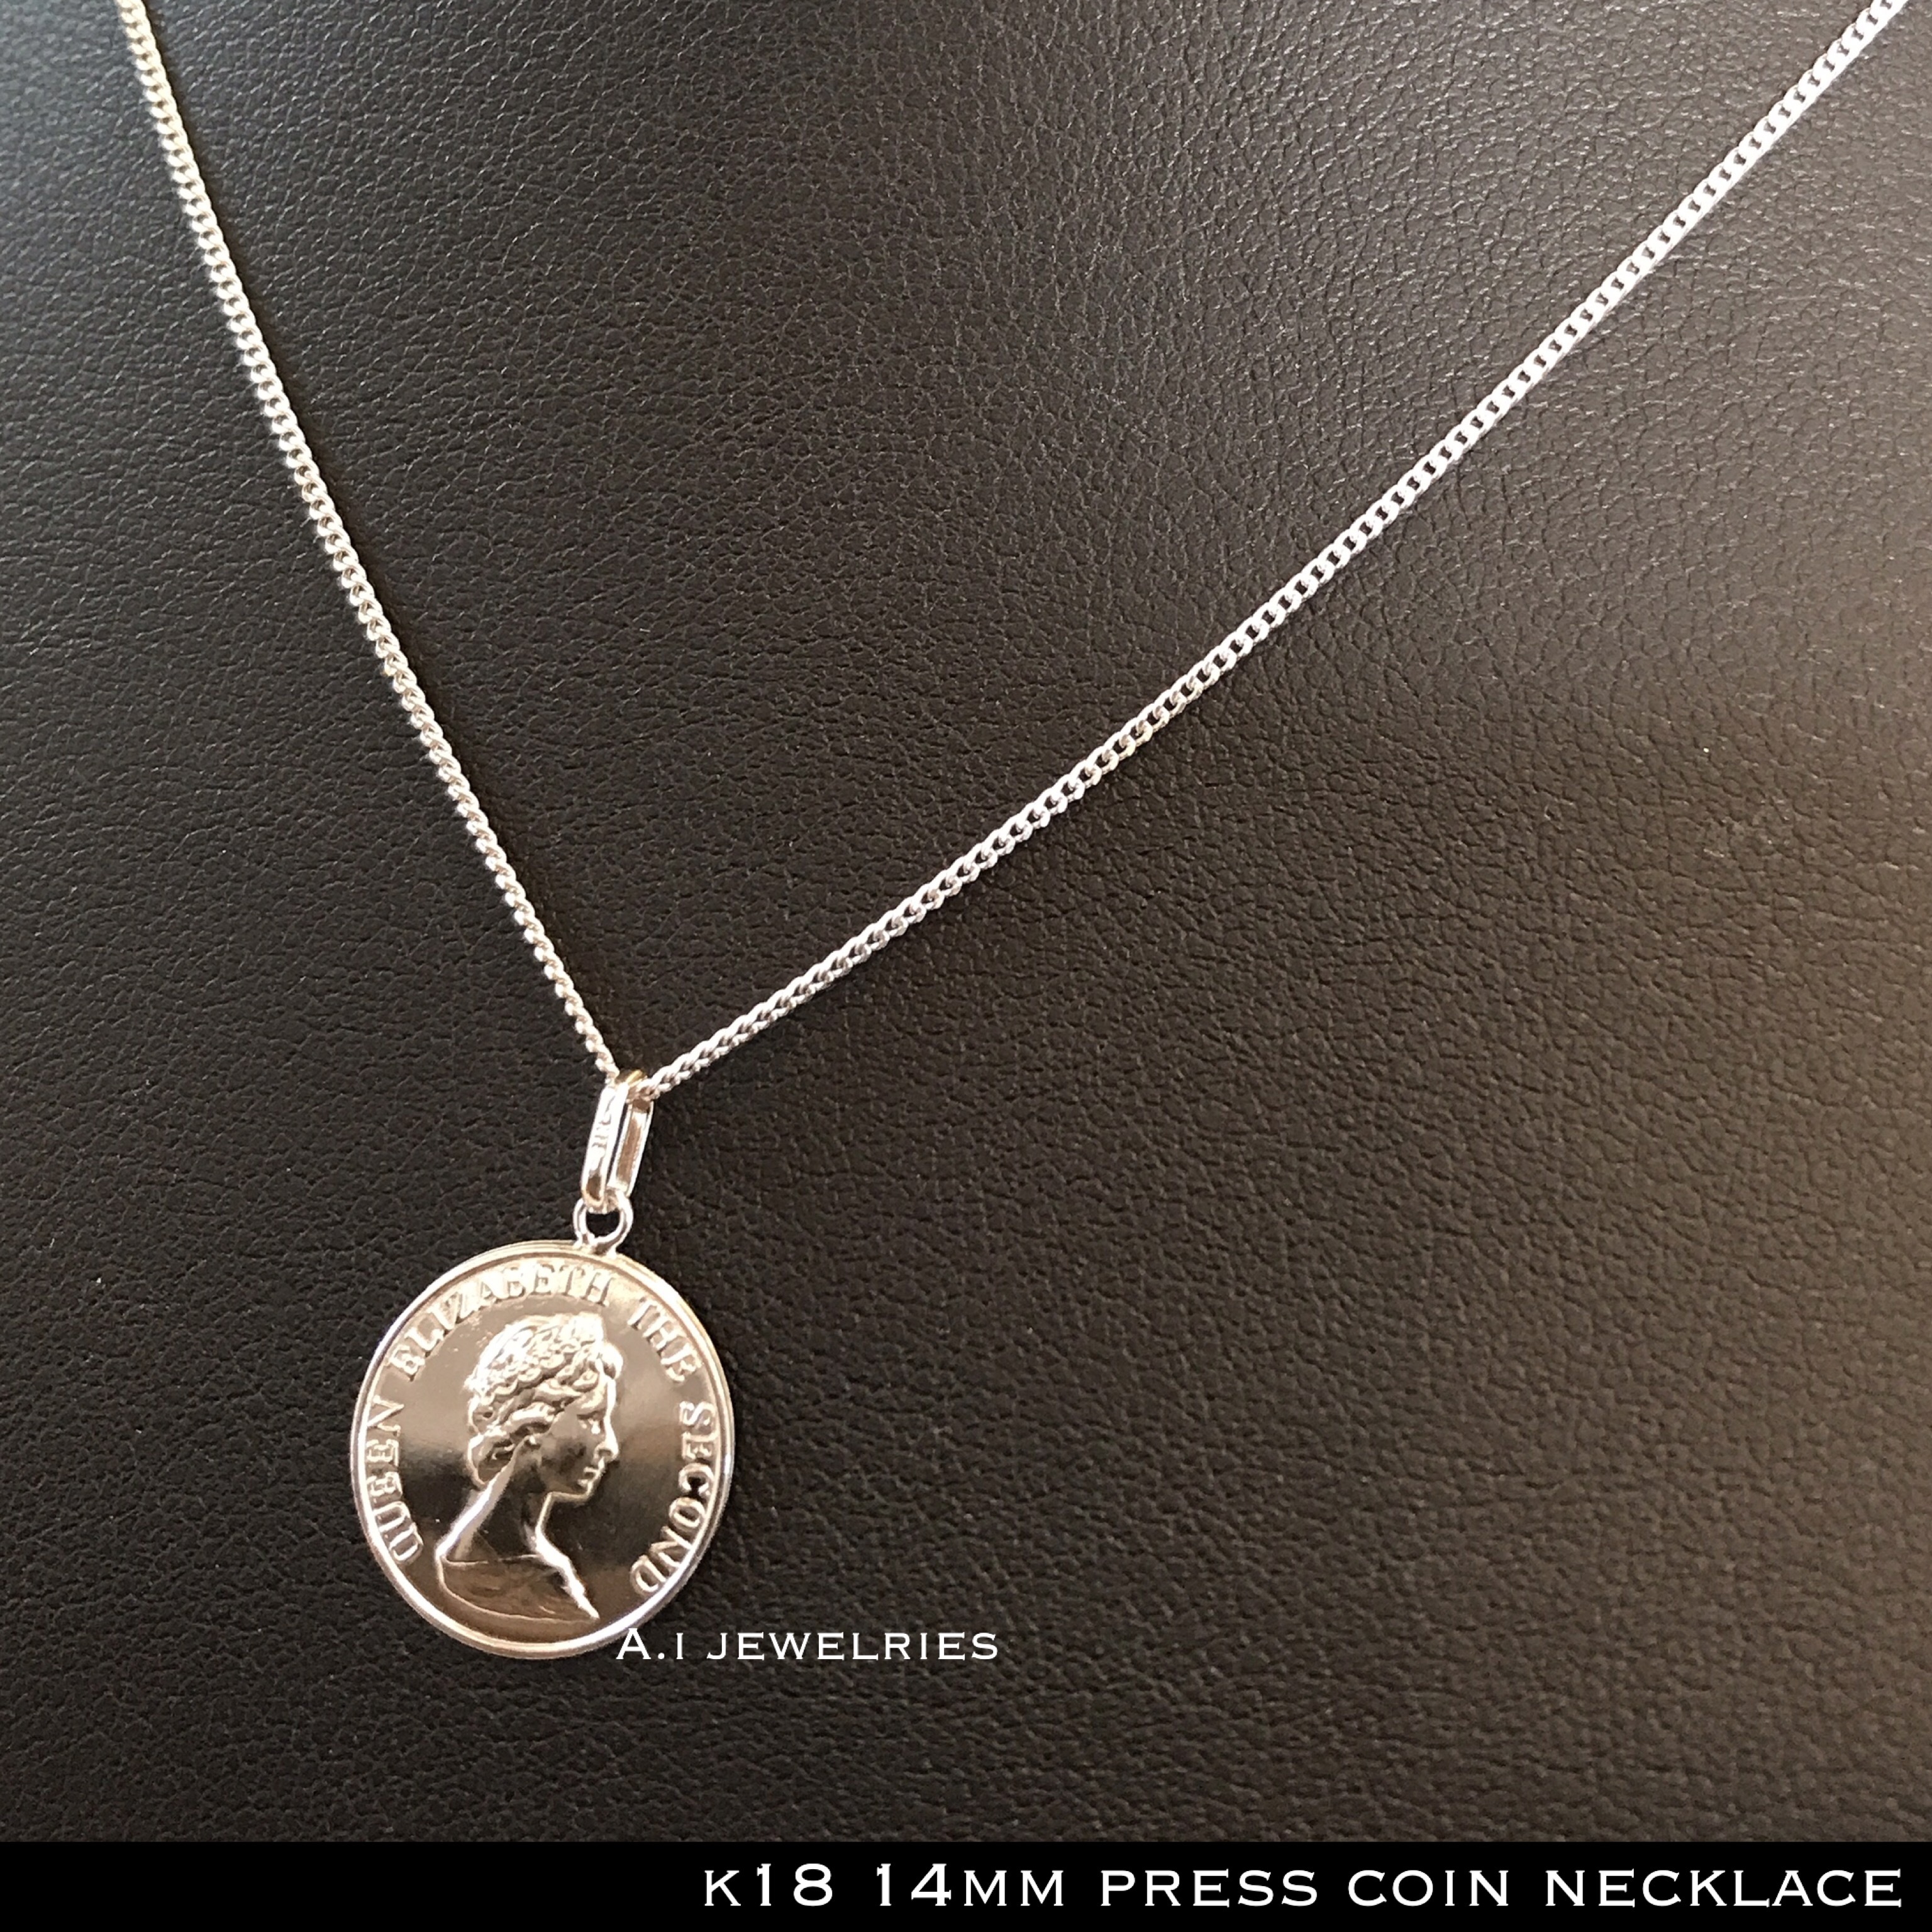 ネックレス 18金 コイン K18 プレス コイン 50cm メンズ K18 14mm Press Coin Necklace 50cm A I Jewelries エイアイジュエリーズ